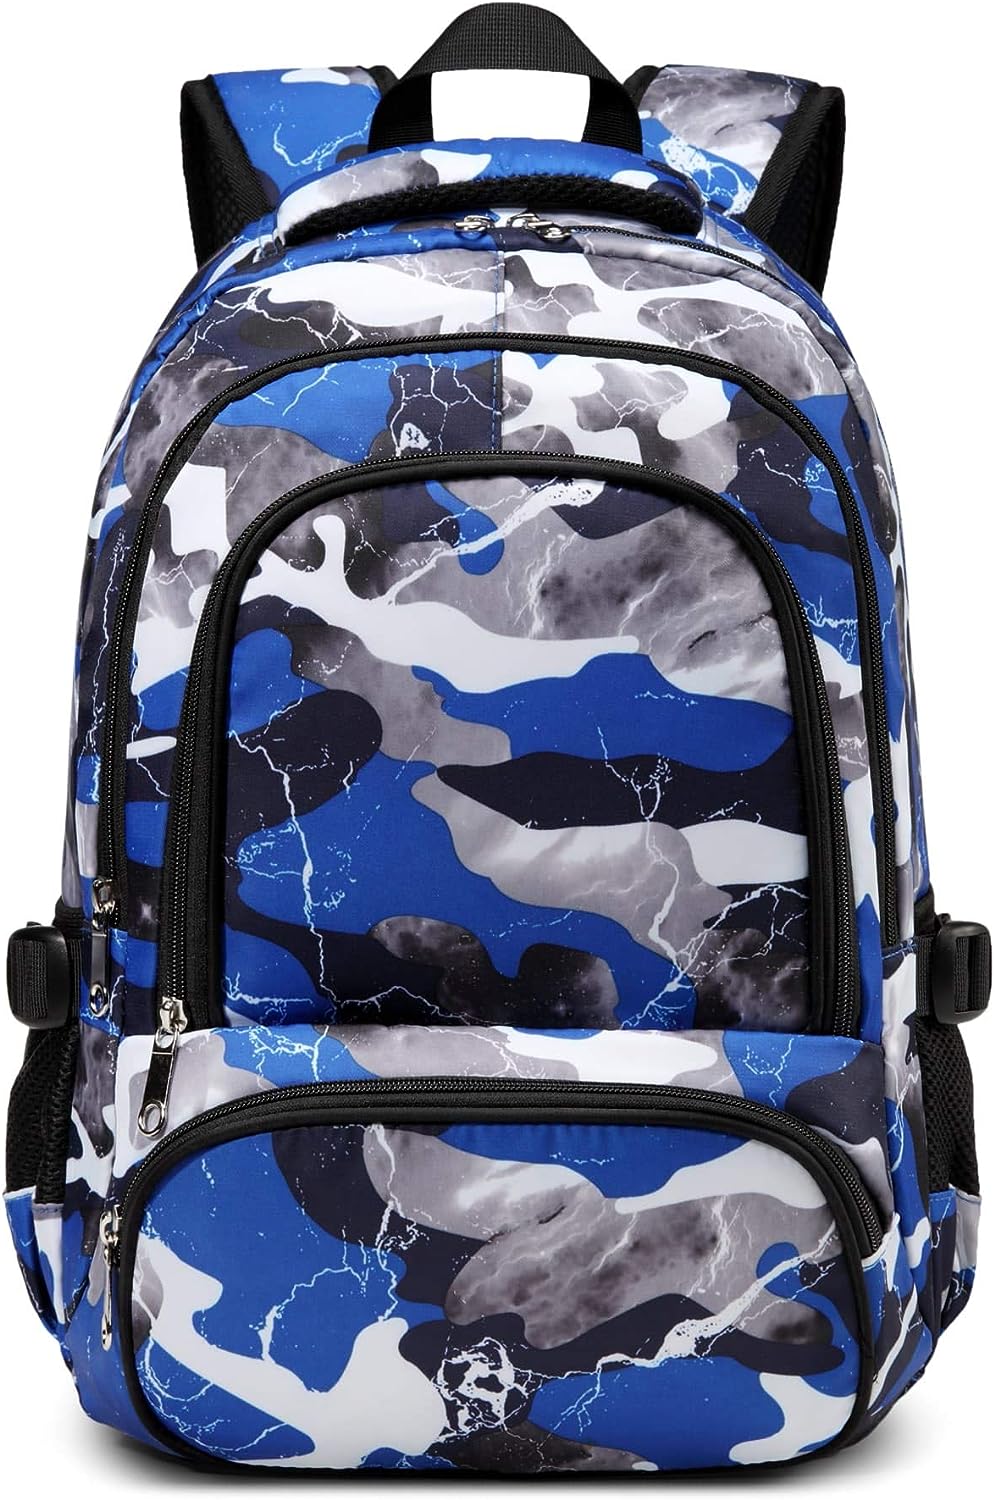 Bluefairy Kids Backpack